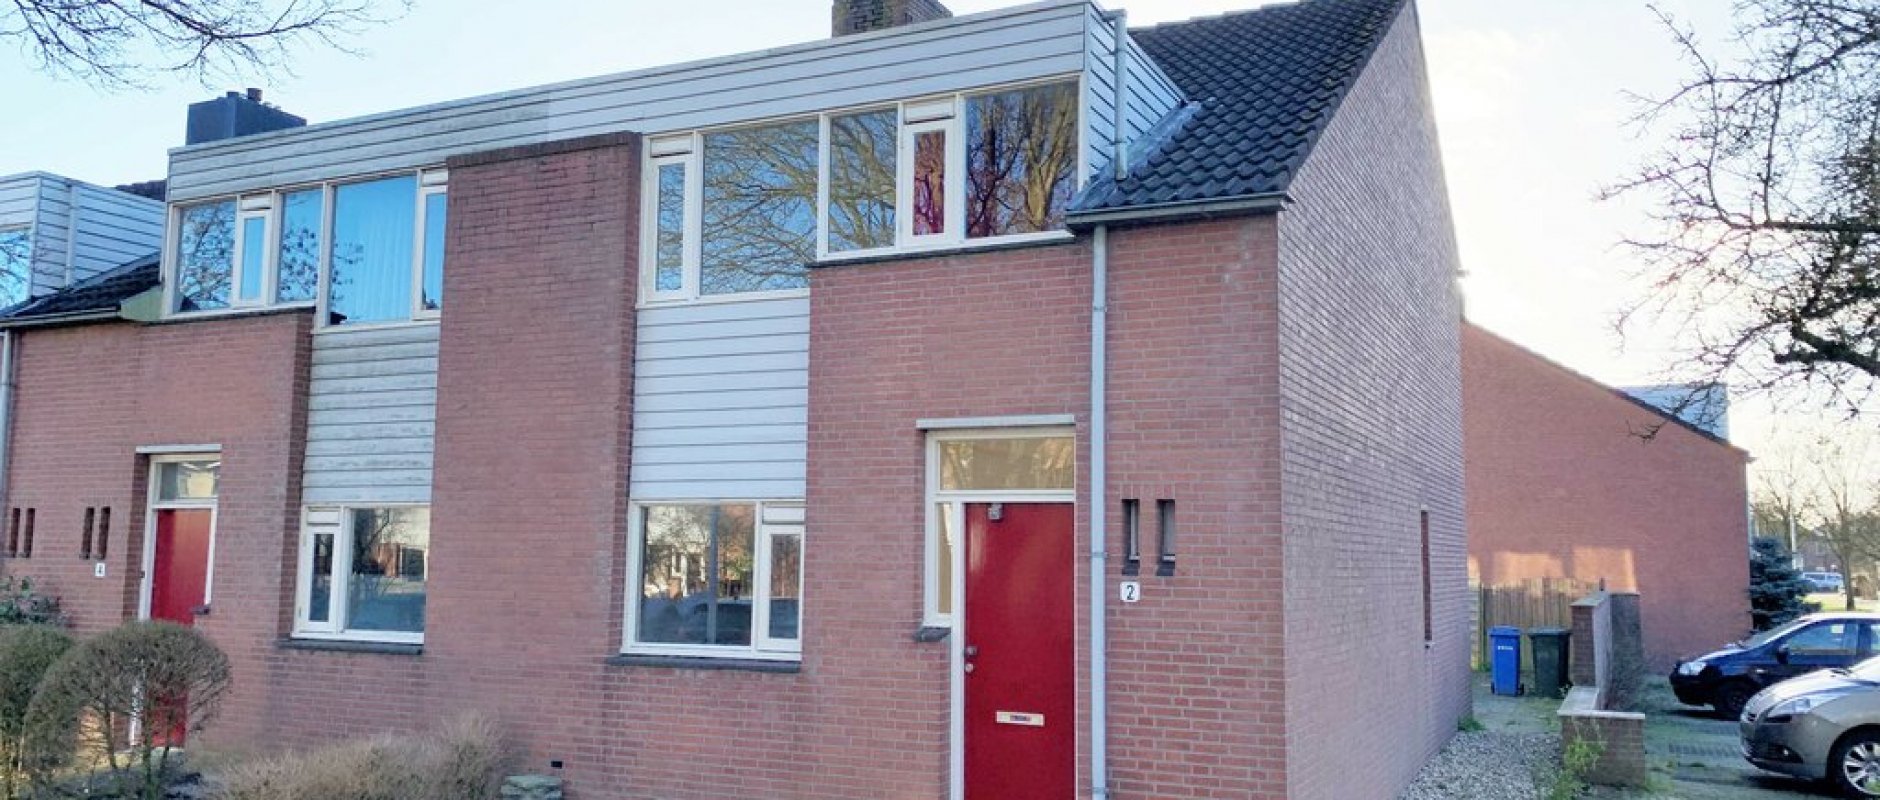 Woning te koop aan de Twellosebeek 2 te Zwolle